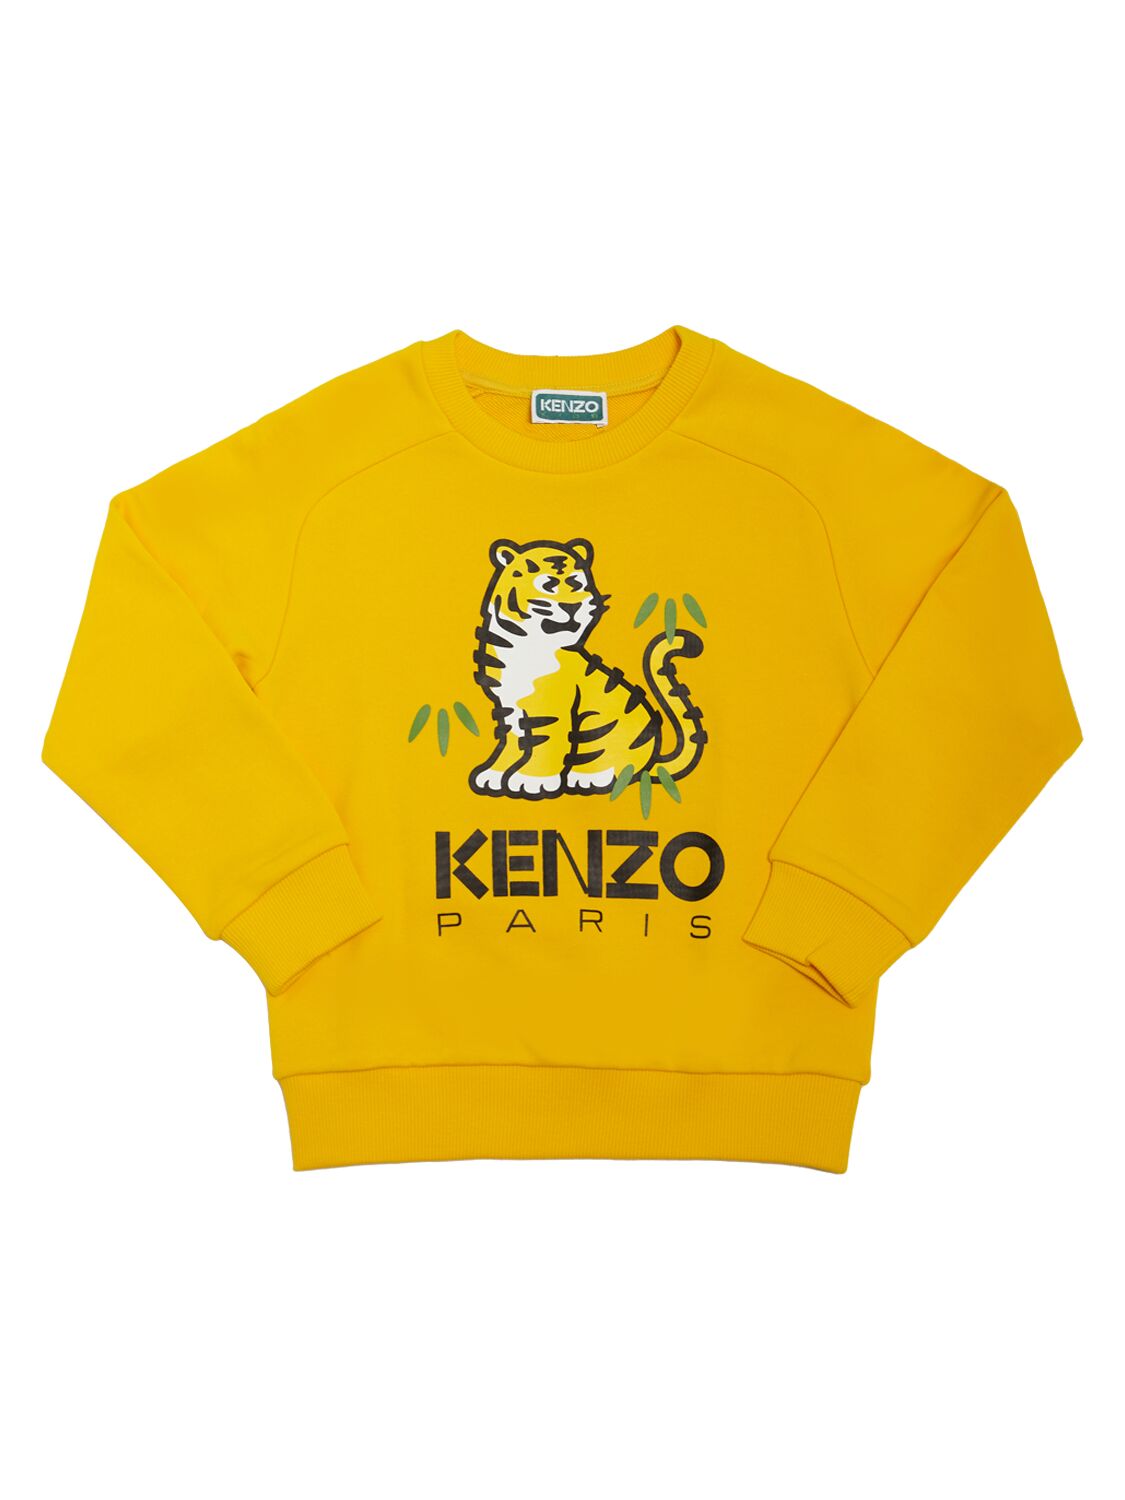 Kenzo Kids' Cotton Crewneck Sweatshirt In Yellow